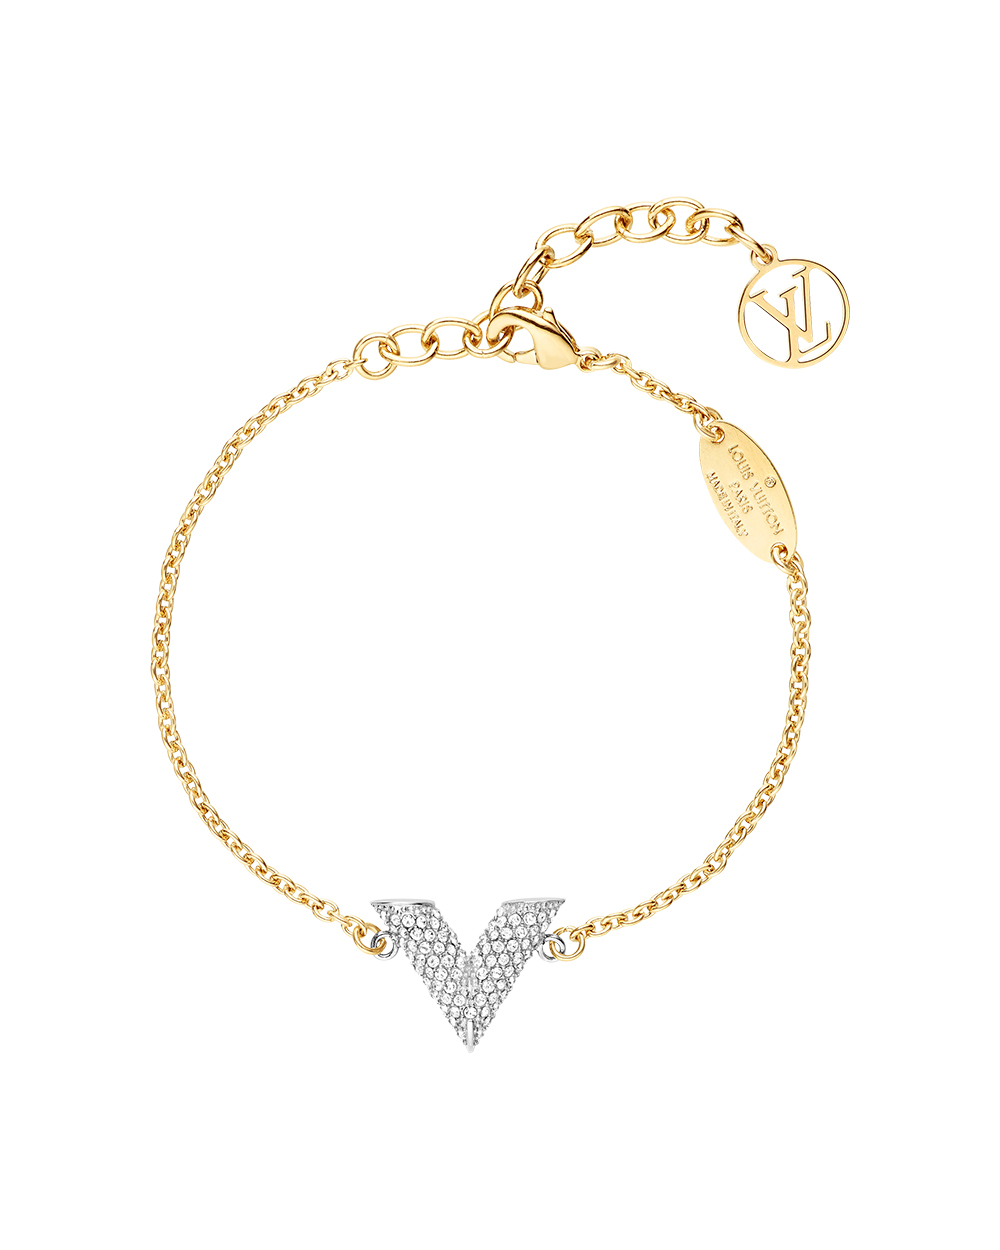 Louis Vuitton necklace, $735